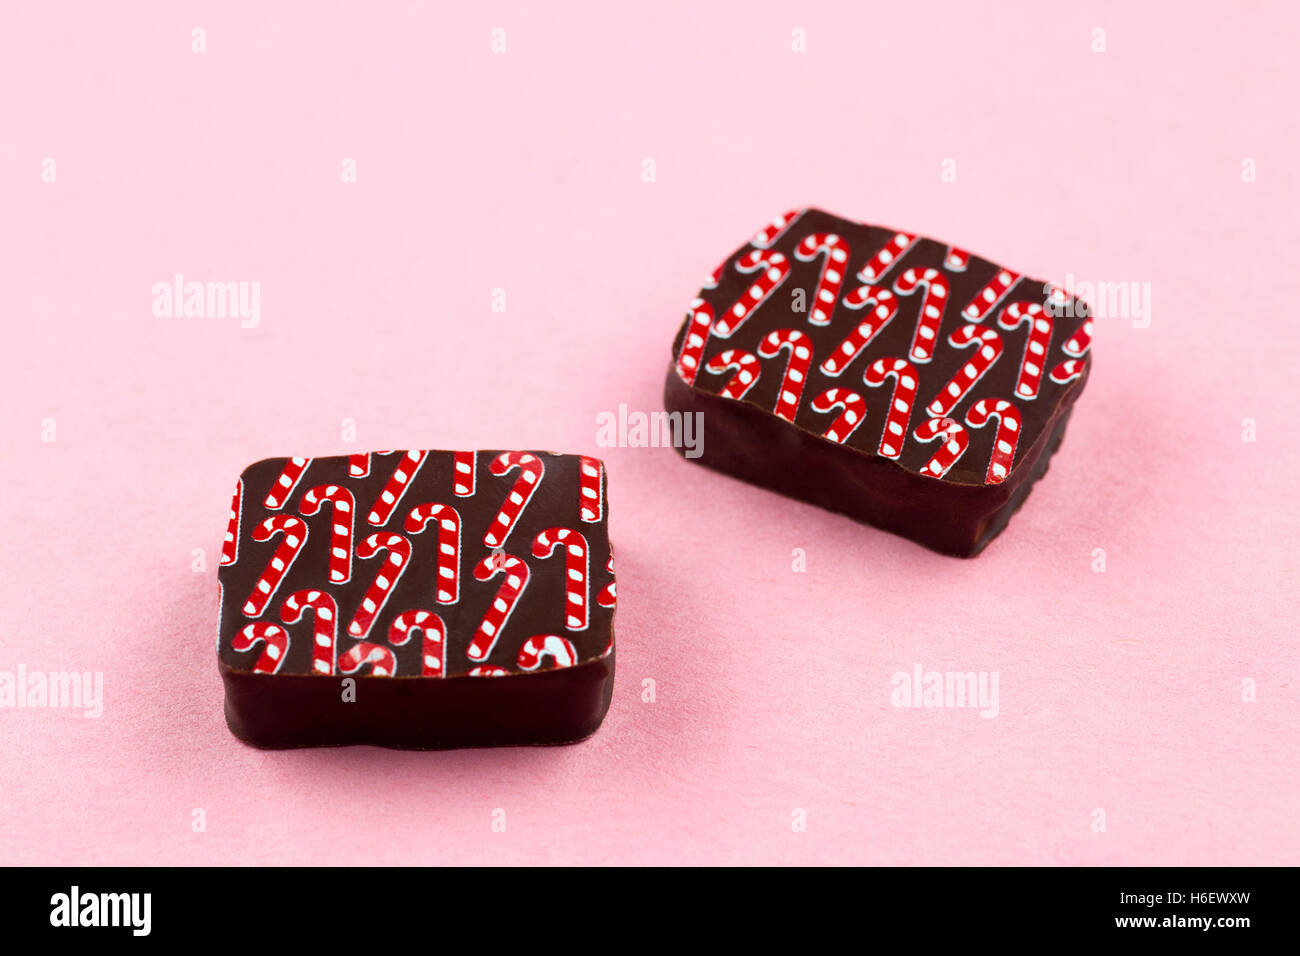 Handgemachte Weihnachtsschokolade, Zuckerrohr-Aroma, auf pinkfarbenem Hintergrund Stockfoto